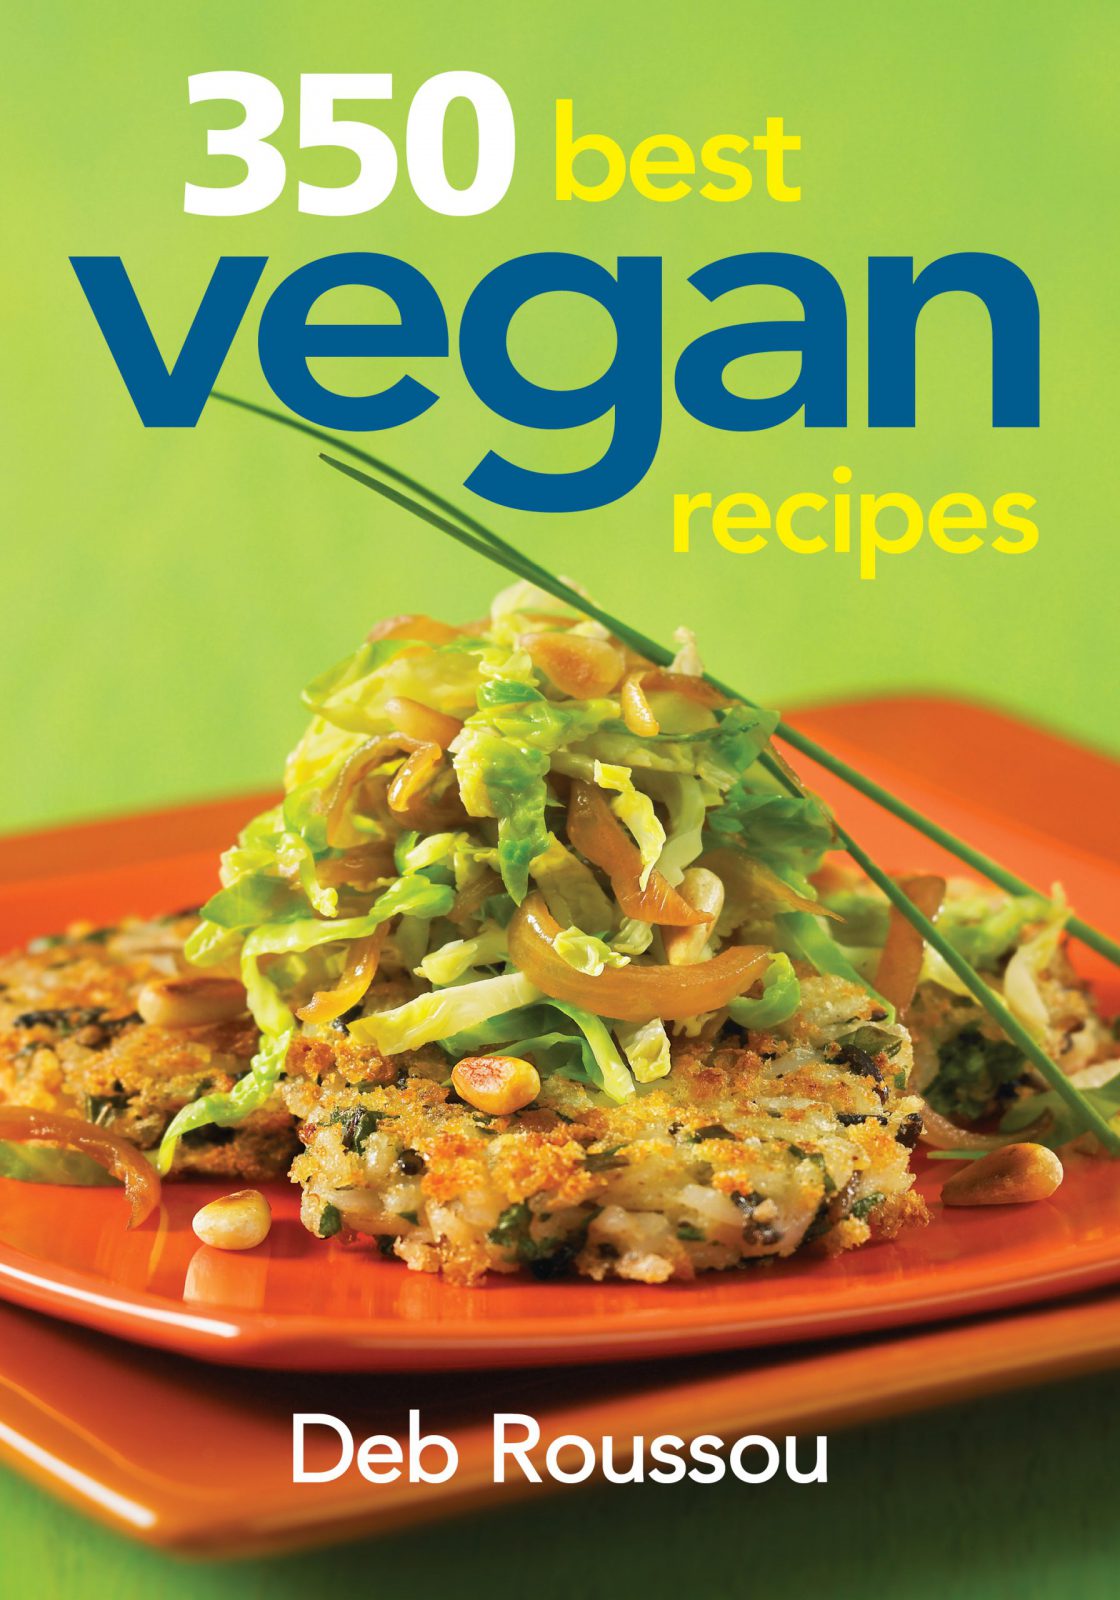 350 Best Vegan Recipes